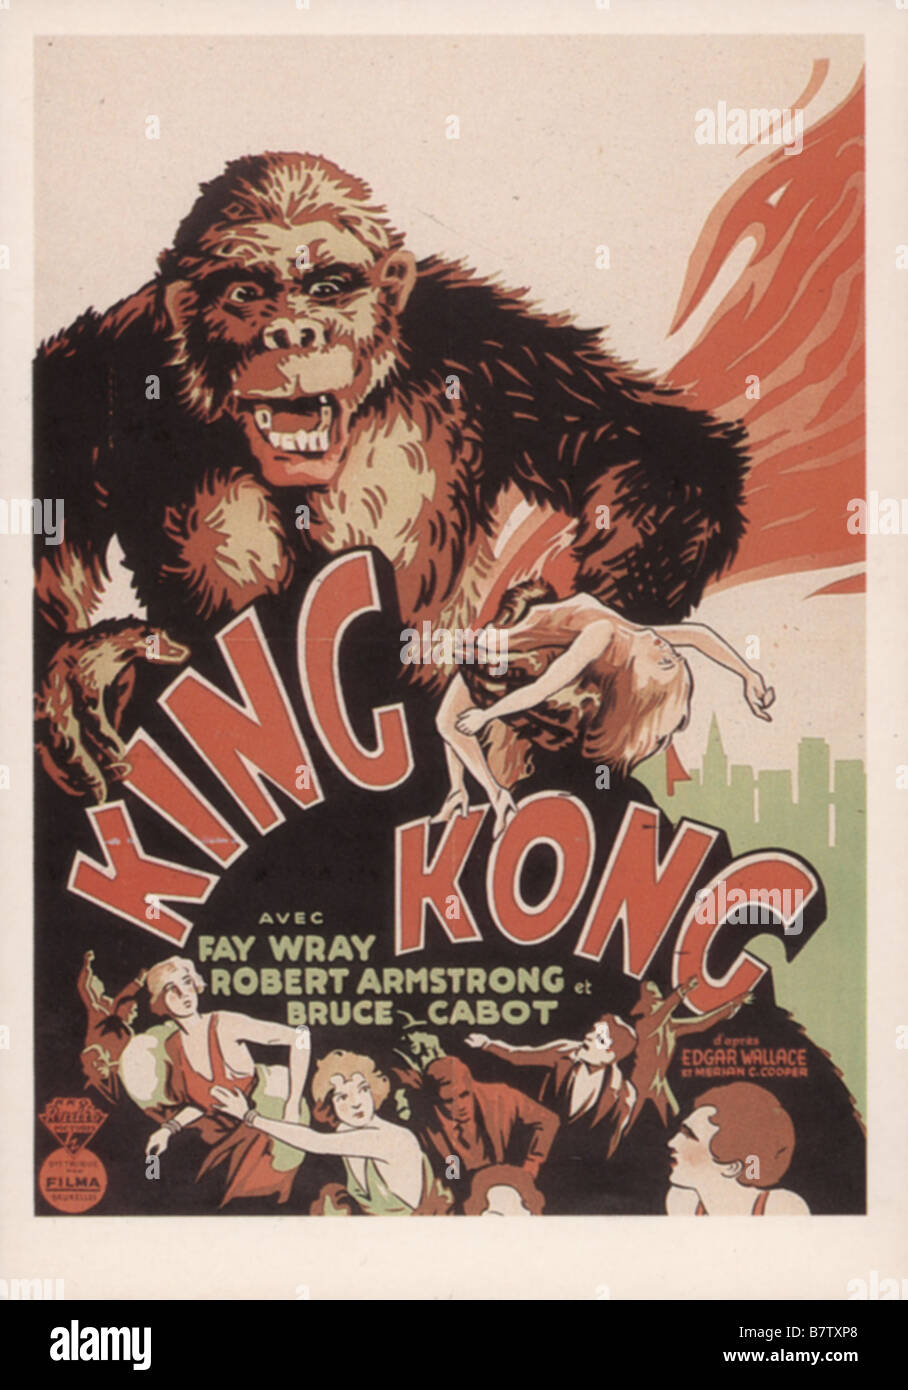 King Kong Anno: 1933 registi USA: Merian C. Cooper e Ernest B. Schoedsack poster del filmato Foto Stock